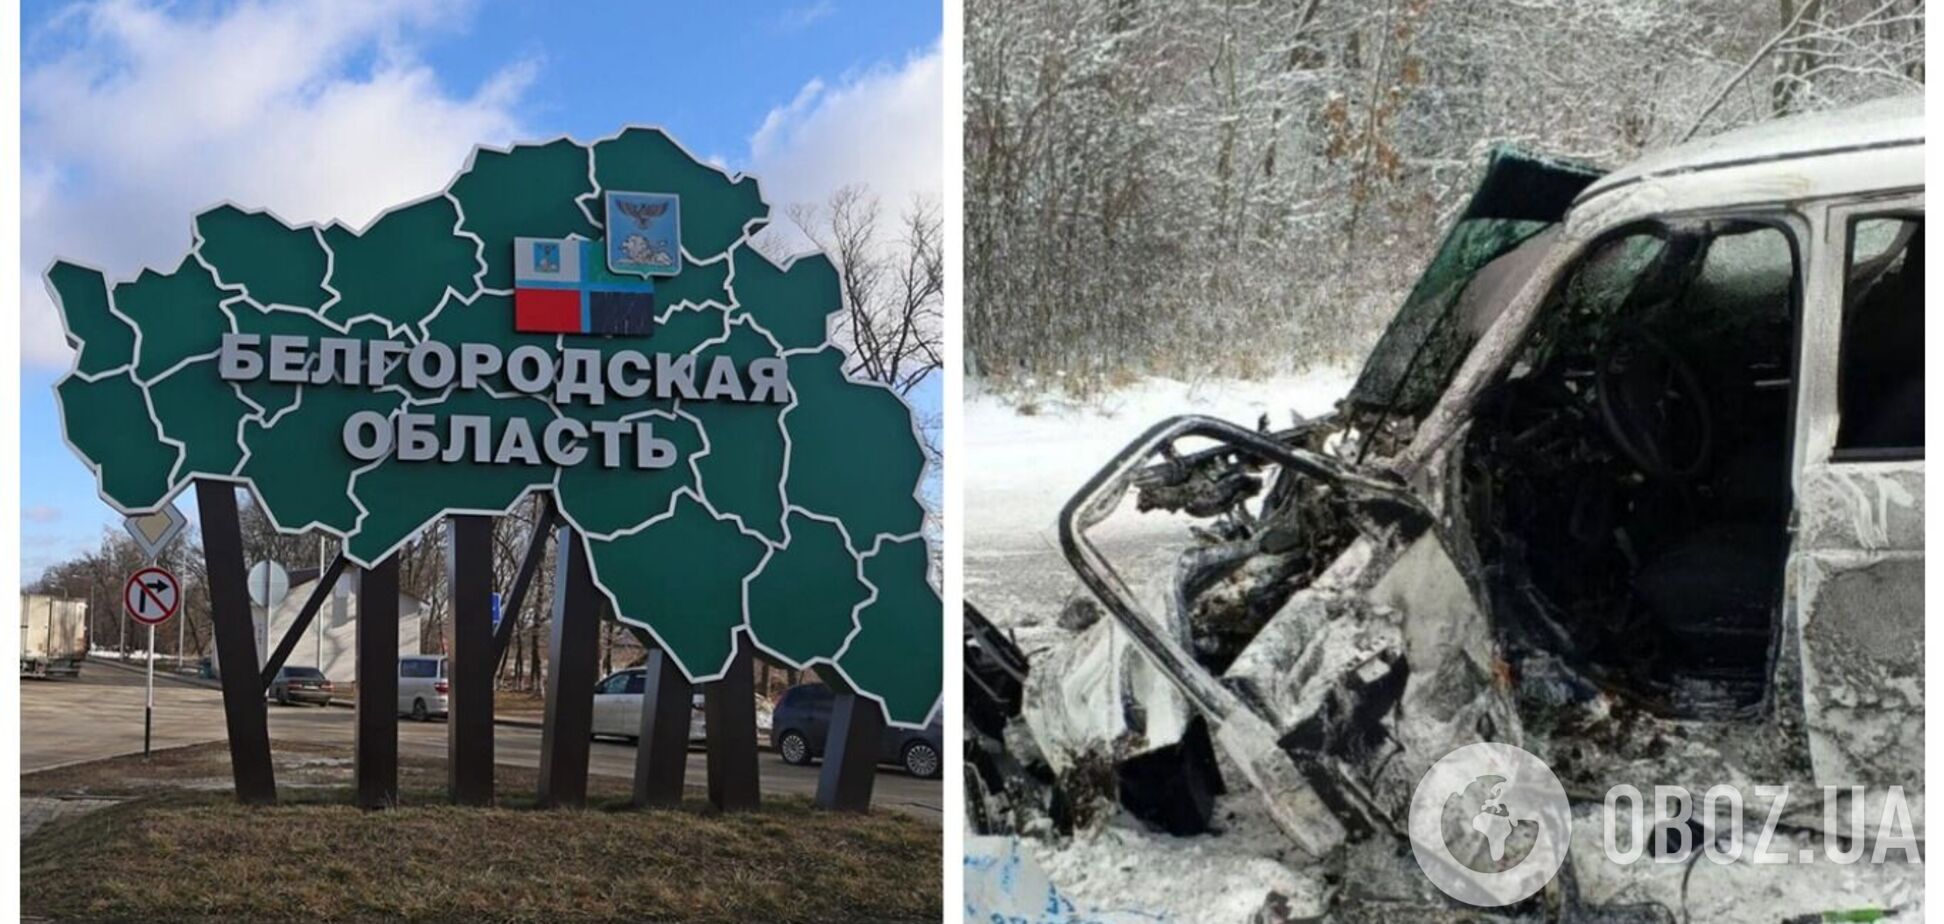 В Белгородской области авто с чиновниками подорвалось на мине: одному из них оторвало ноги